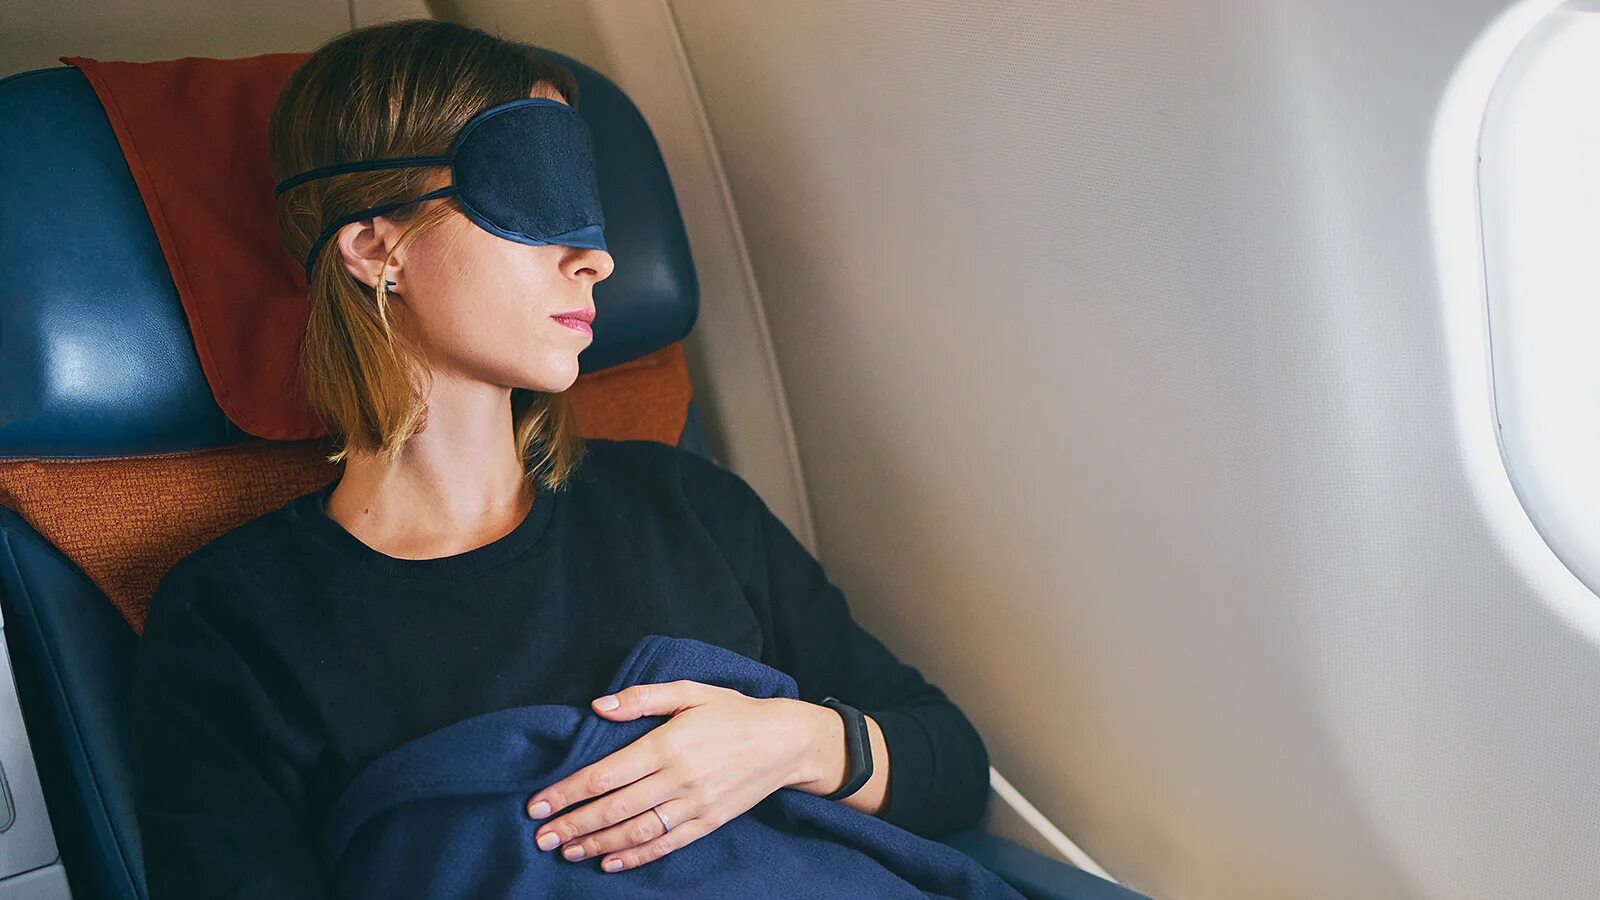 Девушка в самолете. Маска для сна в самолете. Сон в самолете. Спать в самолете. К чему снится самолет девушке